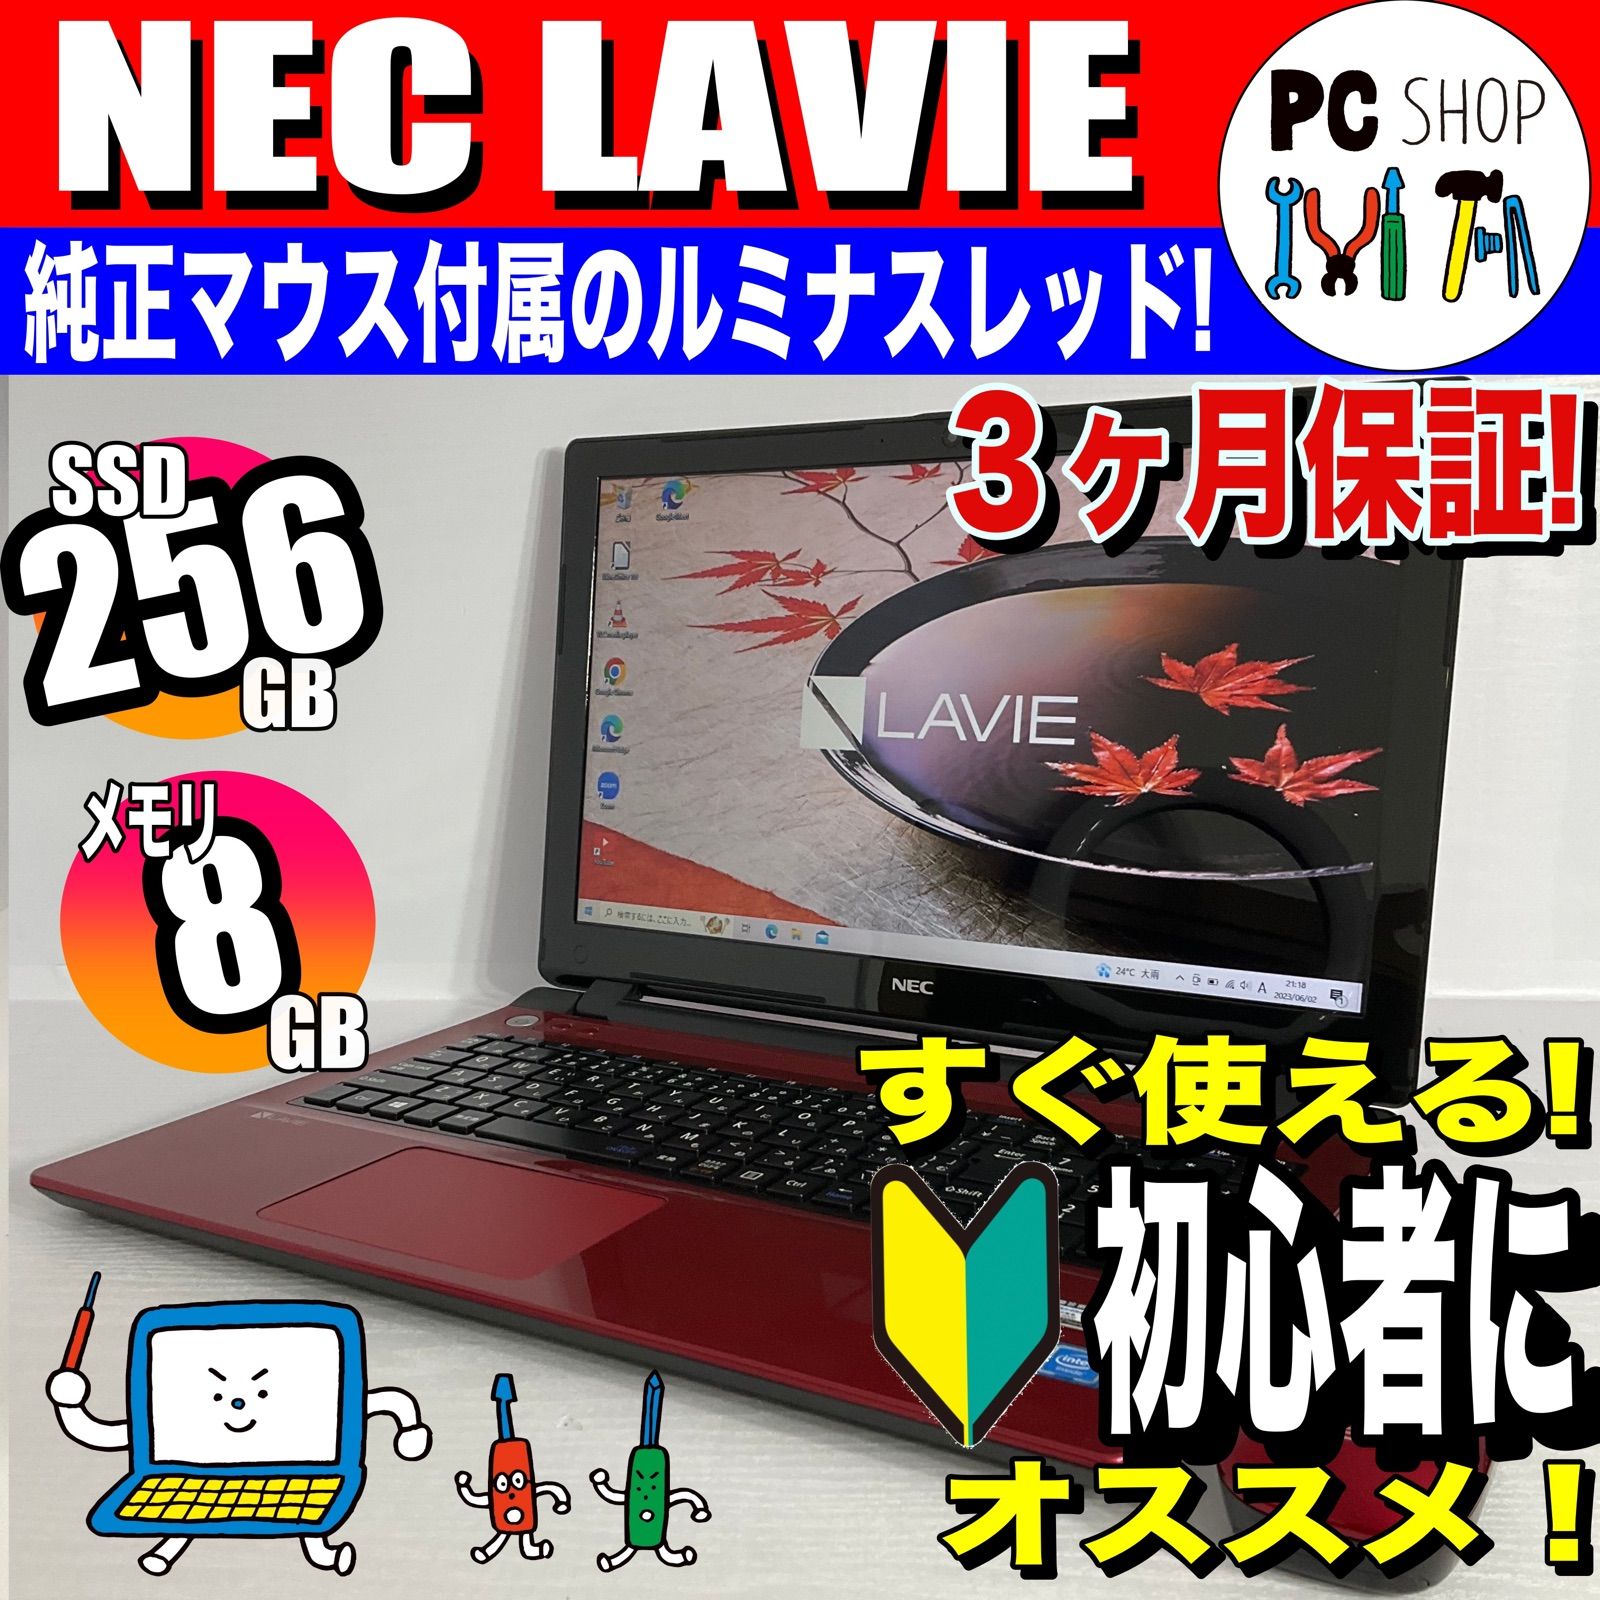 ☆NEC☆ラビー☆最新Windows11☆新品SSD256GB☆オフィス☆テンキ